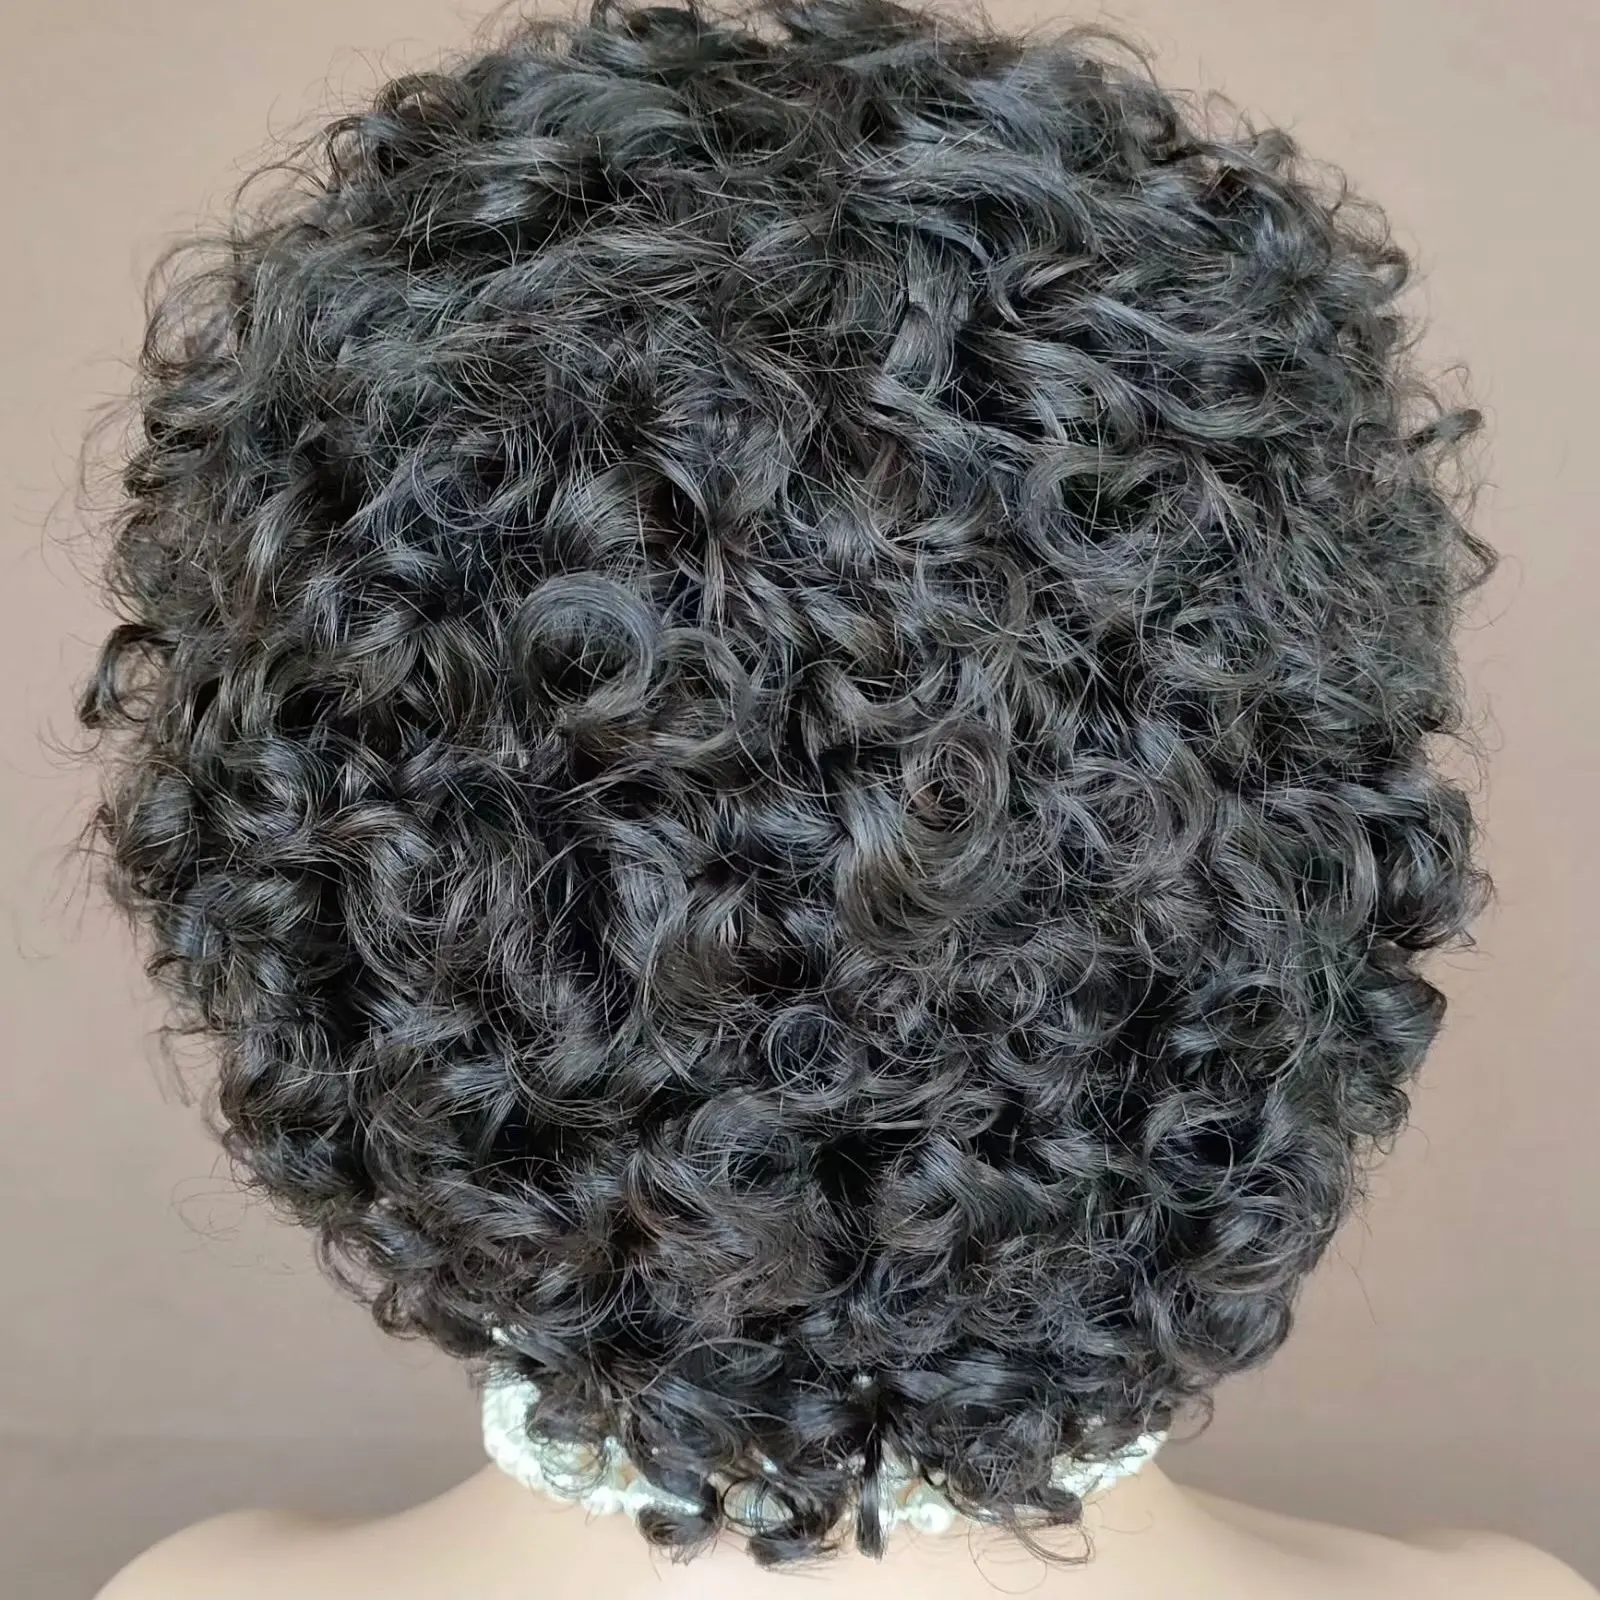 Yüksek kaliteli peri bukleler insan saçı sıcak satış peri kesim tam dantel peruk siyah kadın hızlı teslimat brezilyalı takma saç